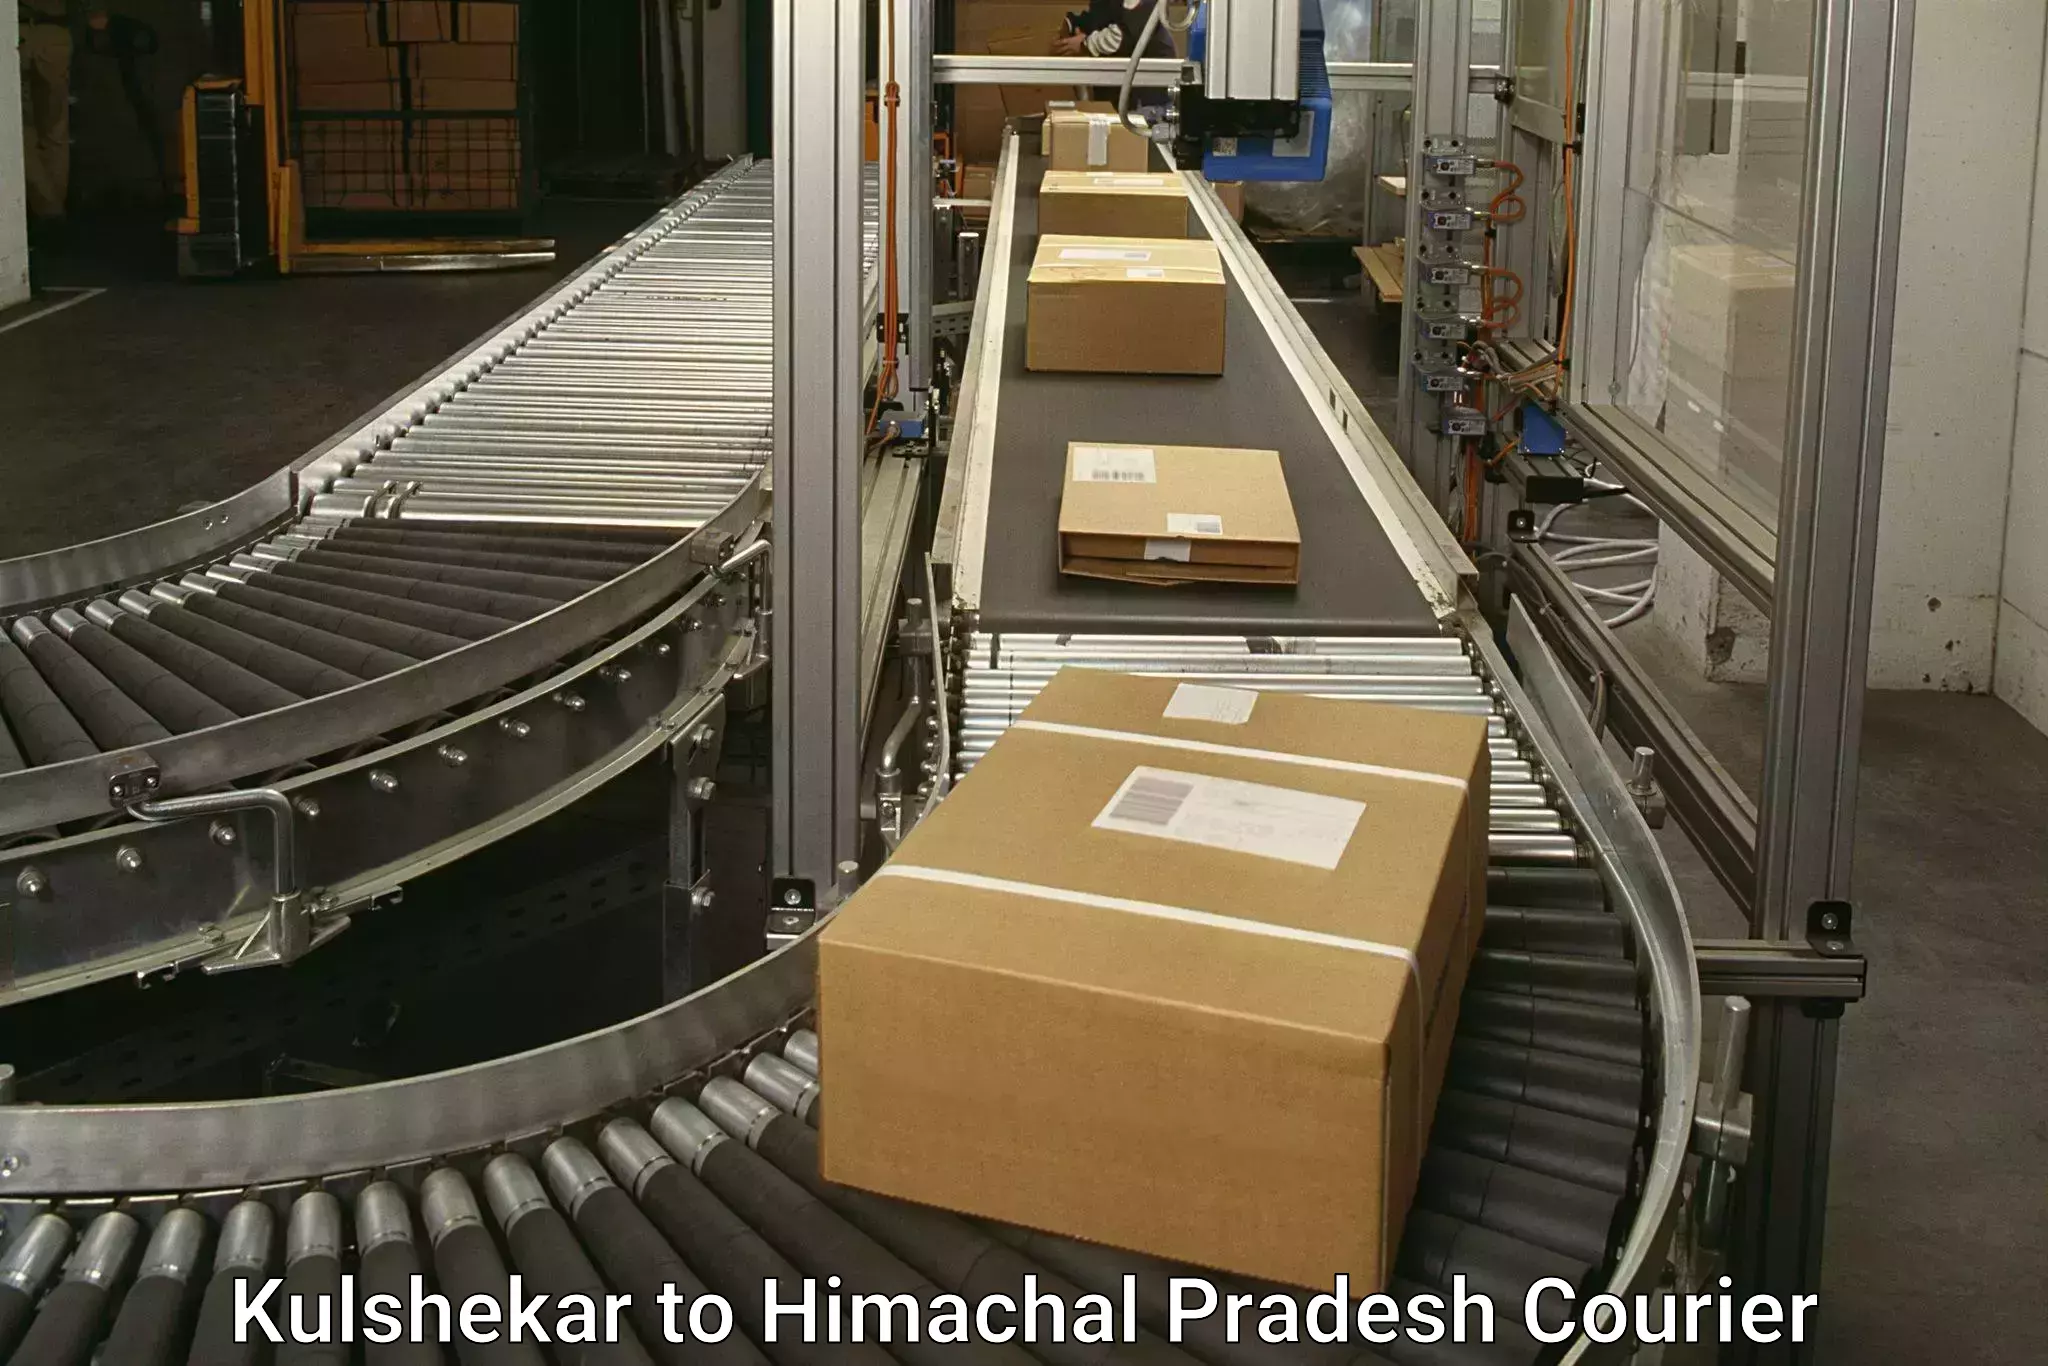 Efficient parcel transport Kulshekar to Rakkar